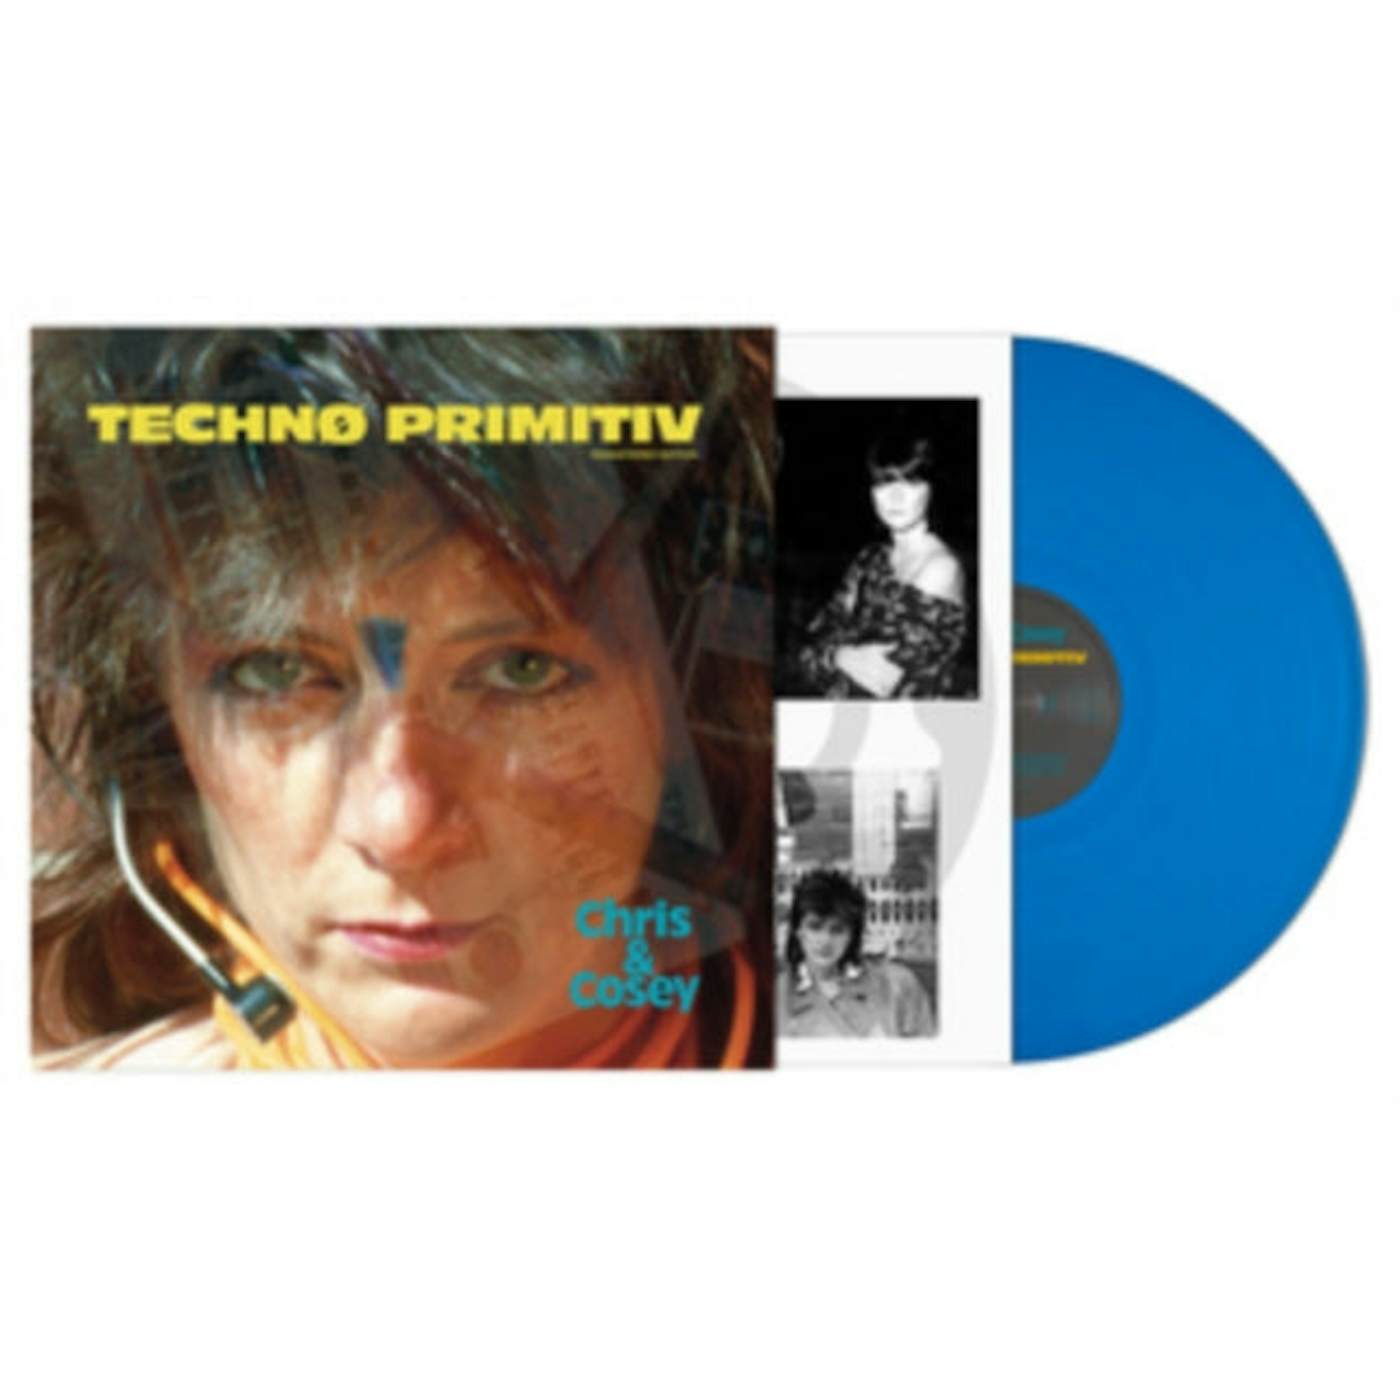 Chris & Cosey LP - Techno Primitiv (Vinyl)